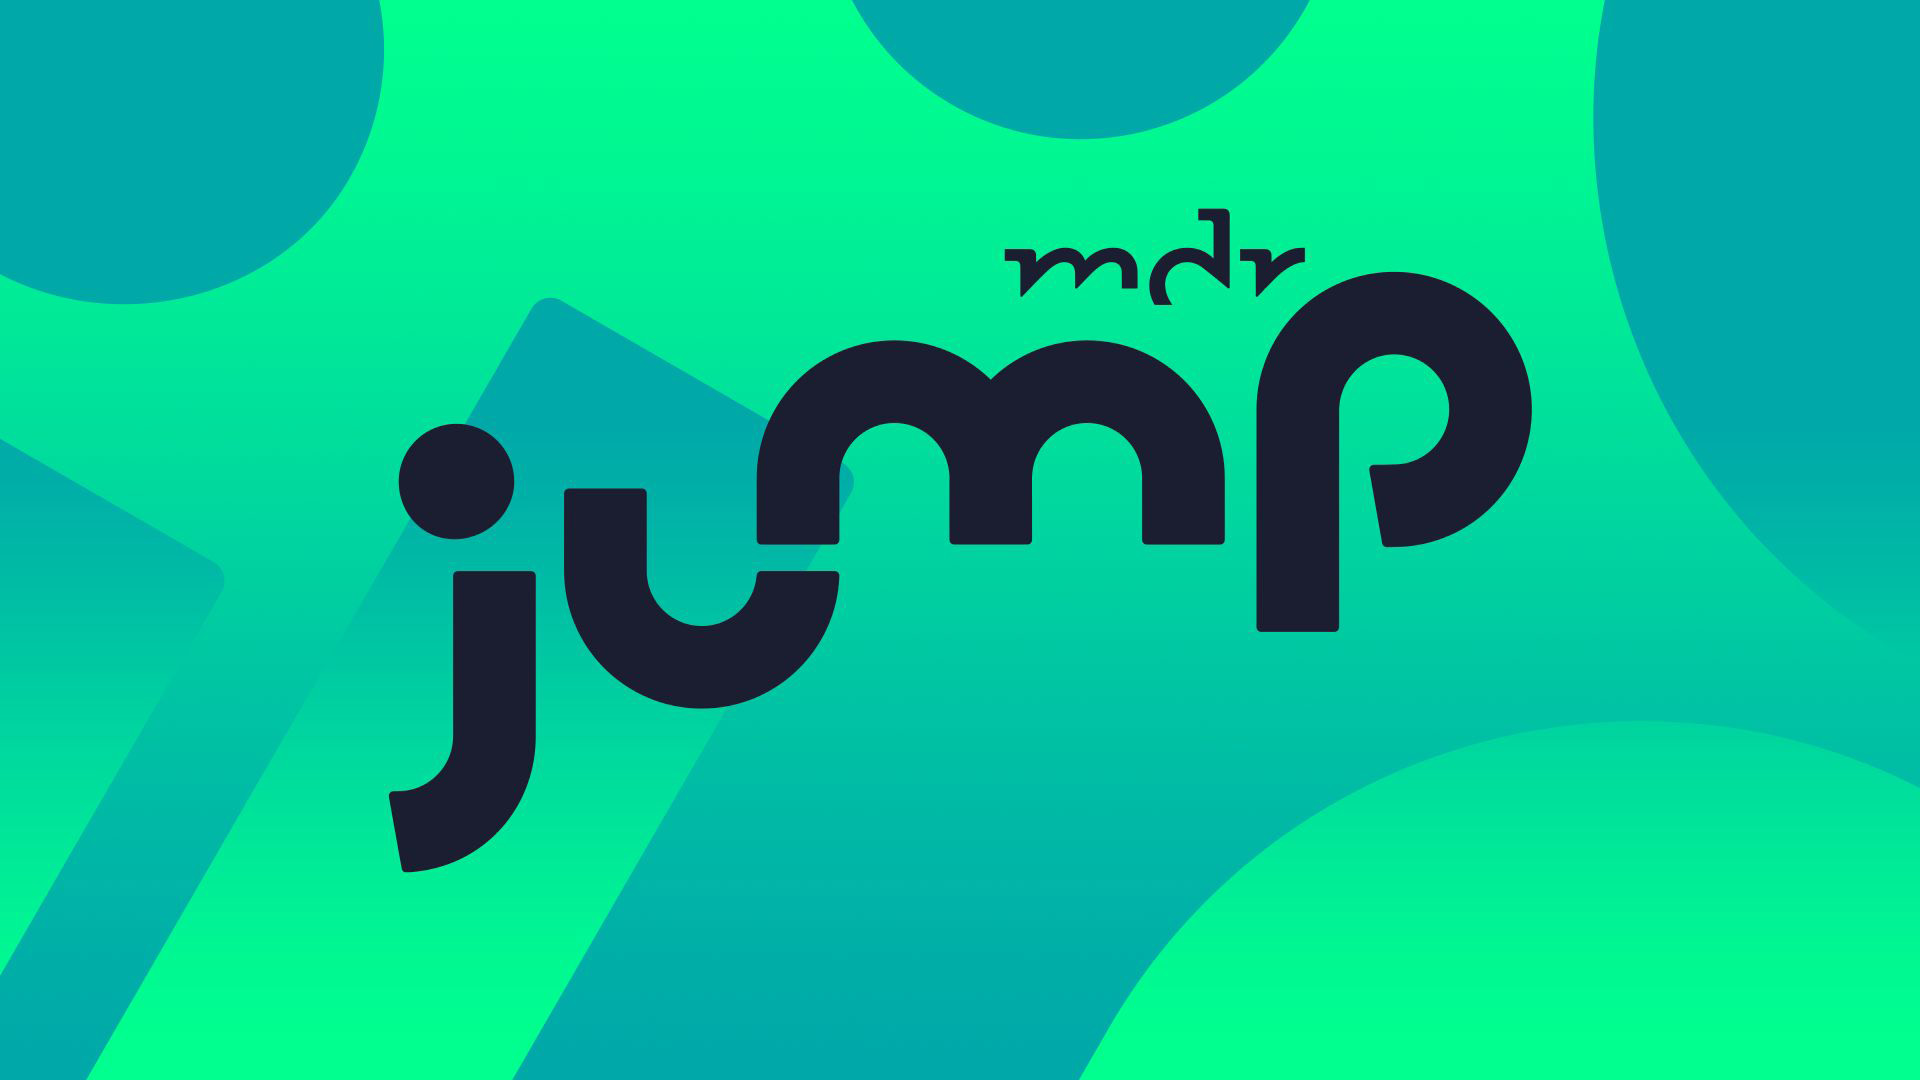 Neues Multi-Plattform-Angebot MDR JUMP ist die neue digitale Entertainment-Marke des MDR Presseportal